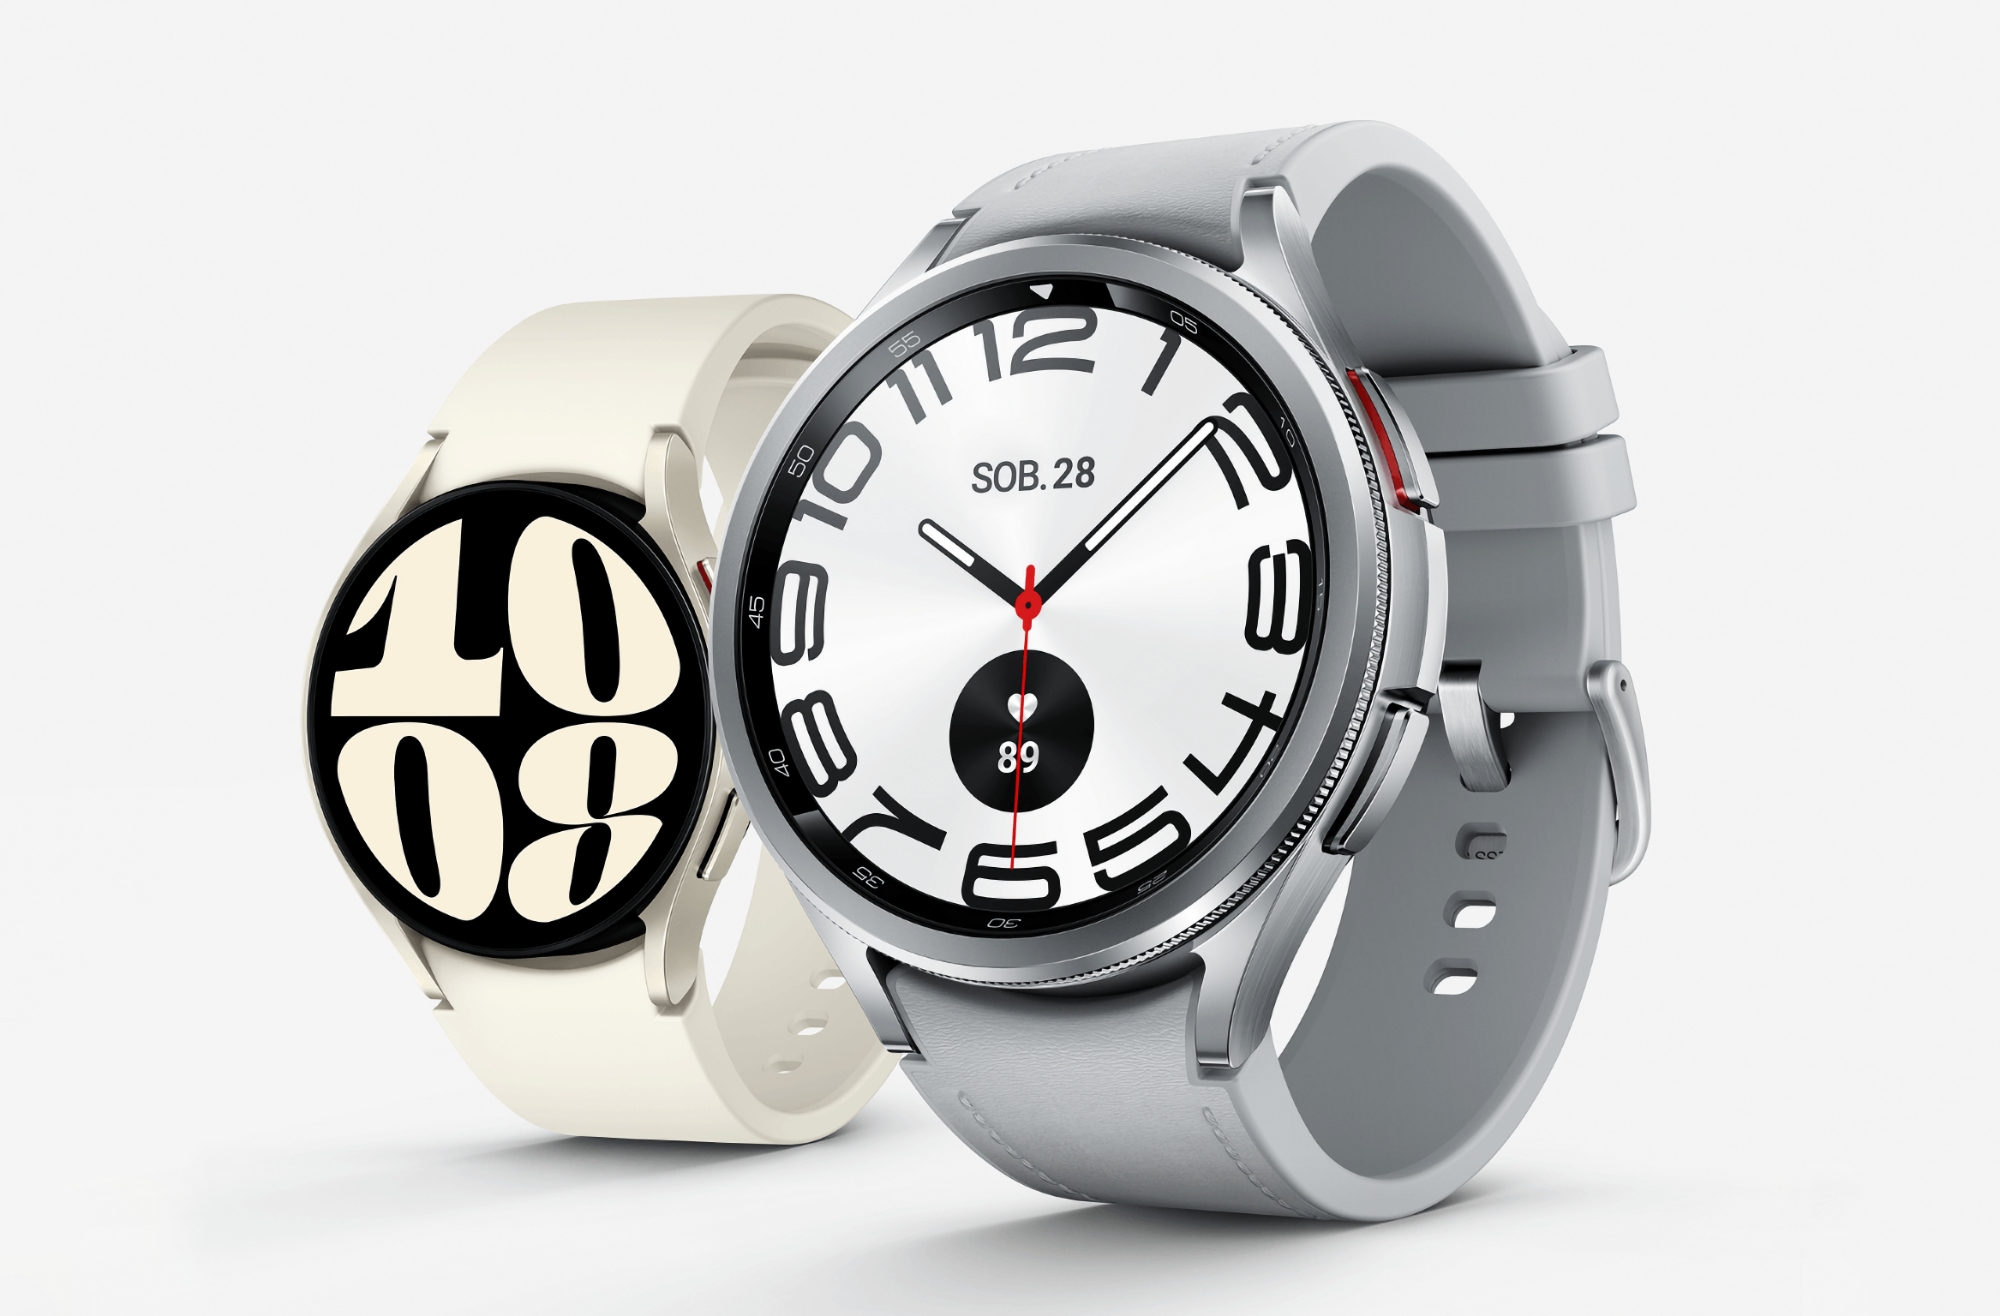 Filtrado: El smartwatch Samsung Galaxy Watch 7 llevará el nuevo chip Exynos W1000